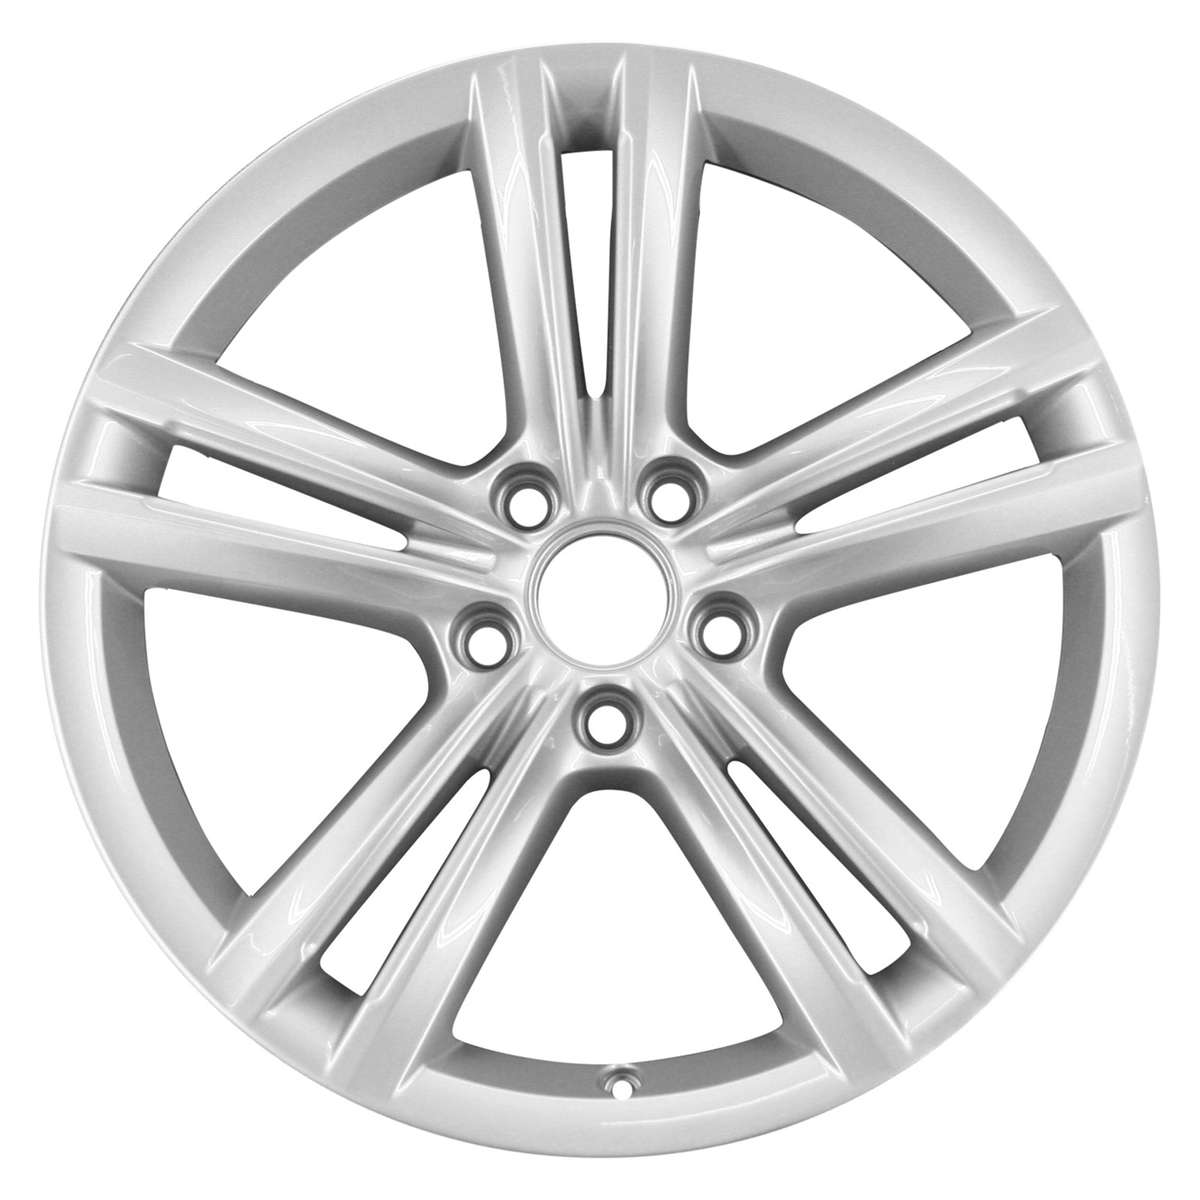 2015 Volkswagen Passat New 18" Replacement Wheel Rim RW69929S